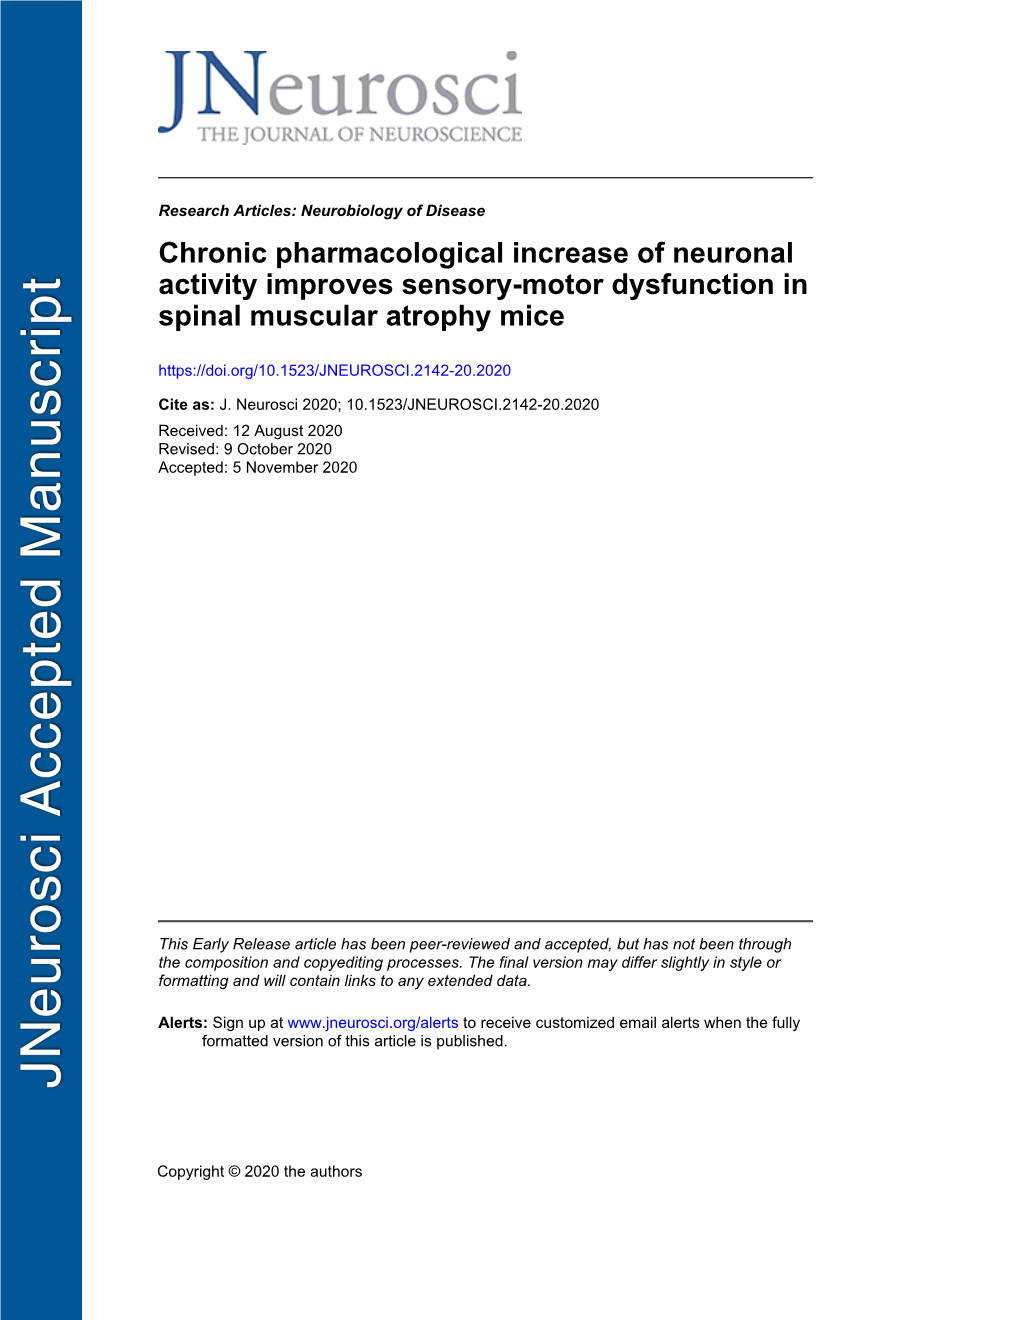 Chronic Pharmacological Increase of Neuronal Activity Improves Sensory